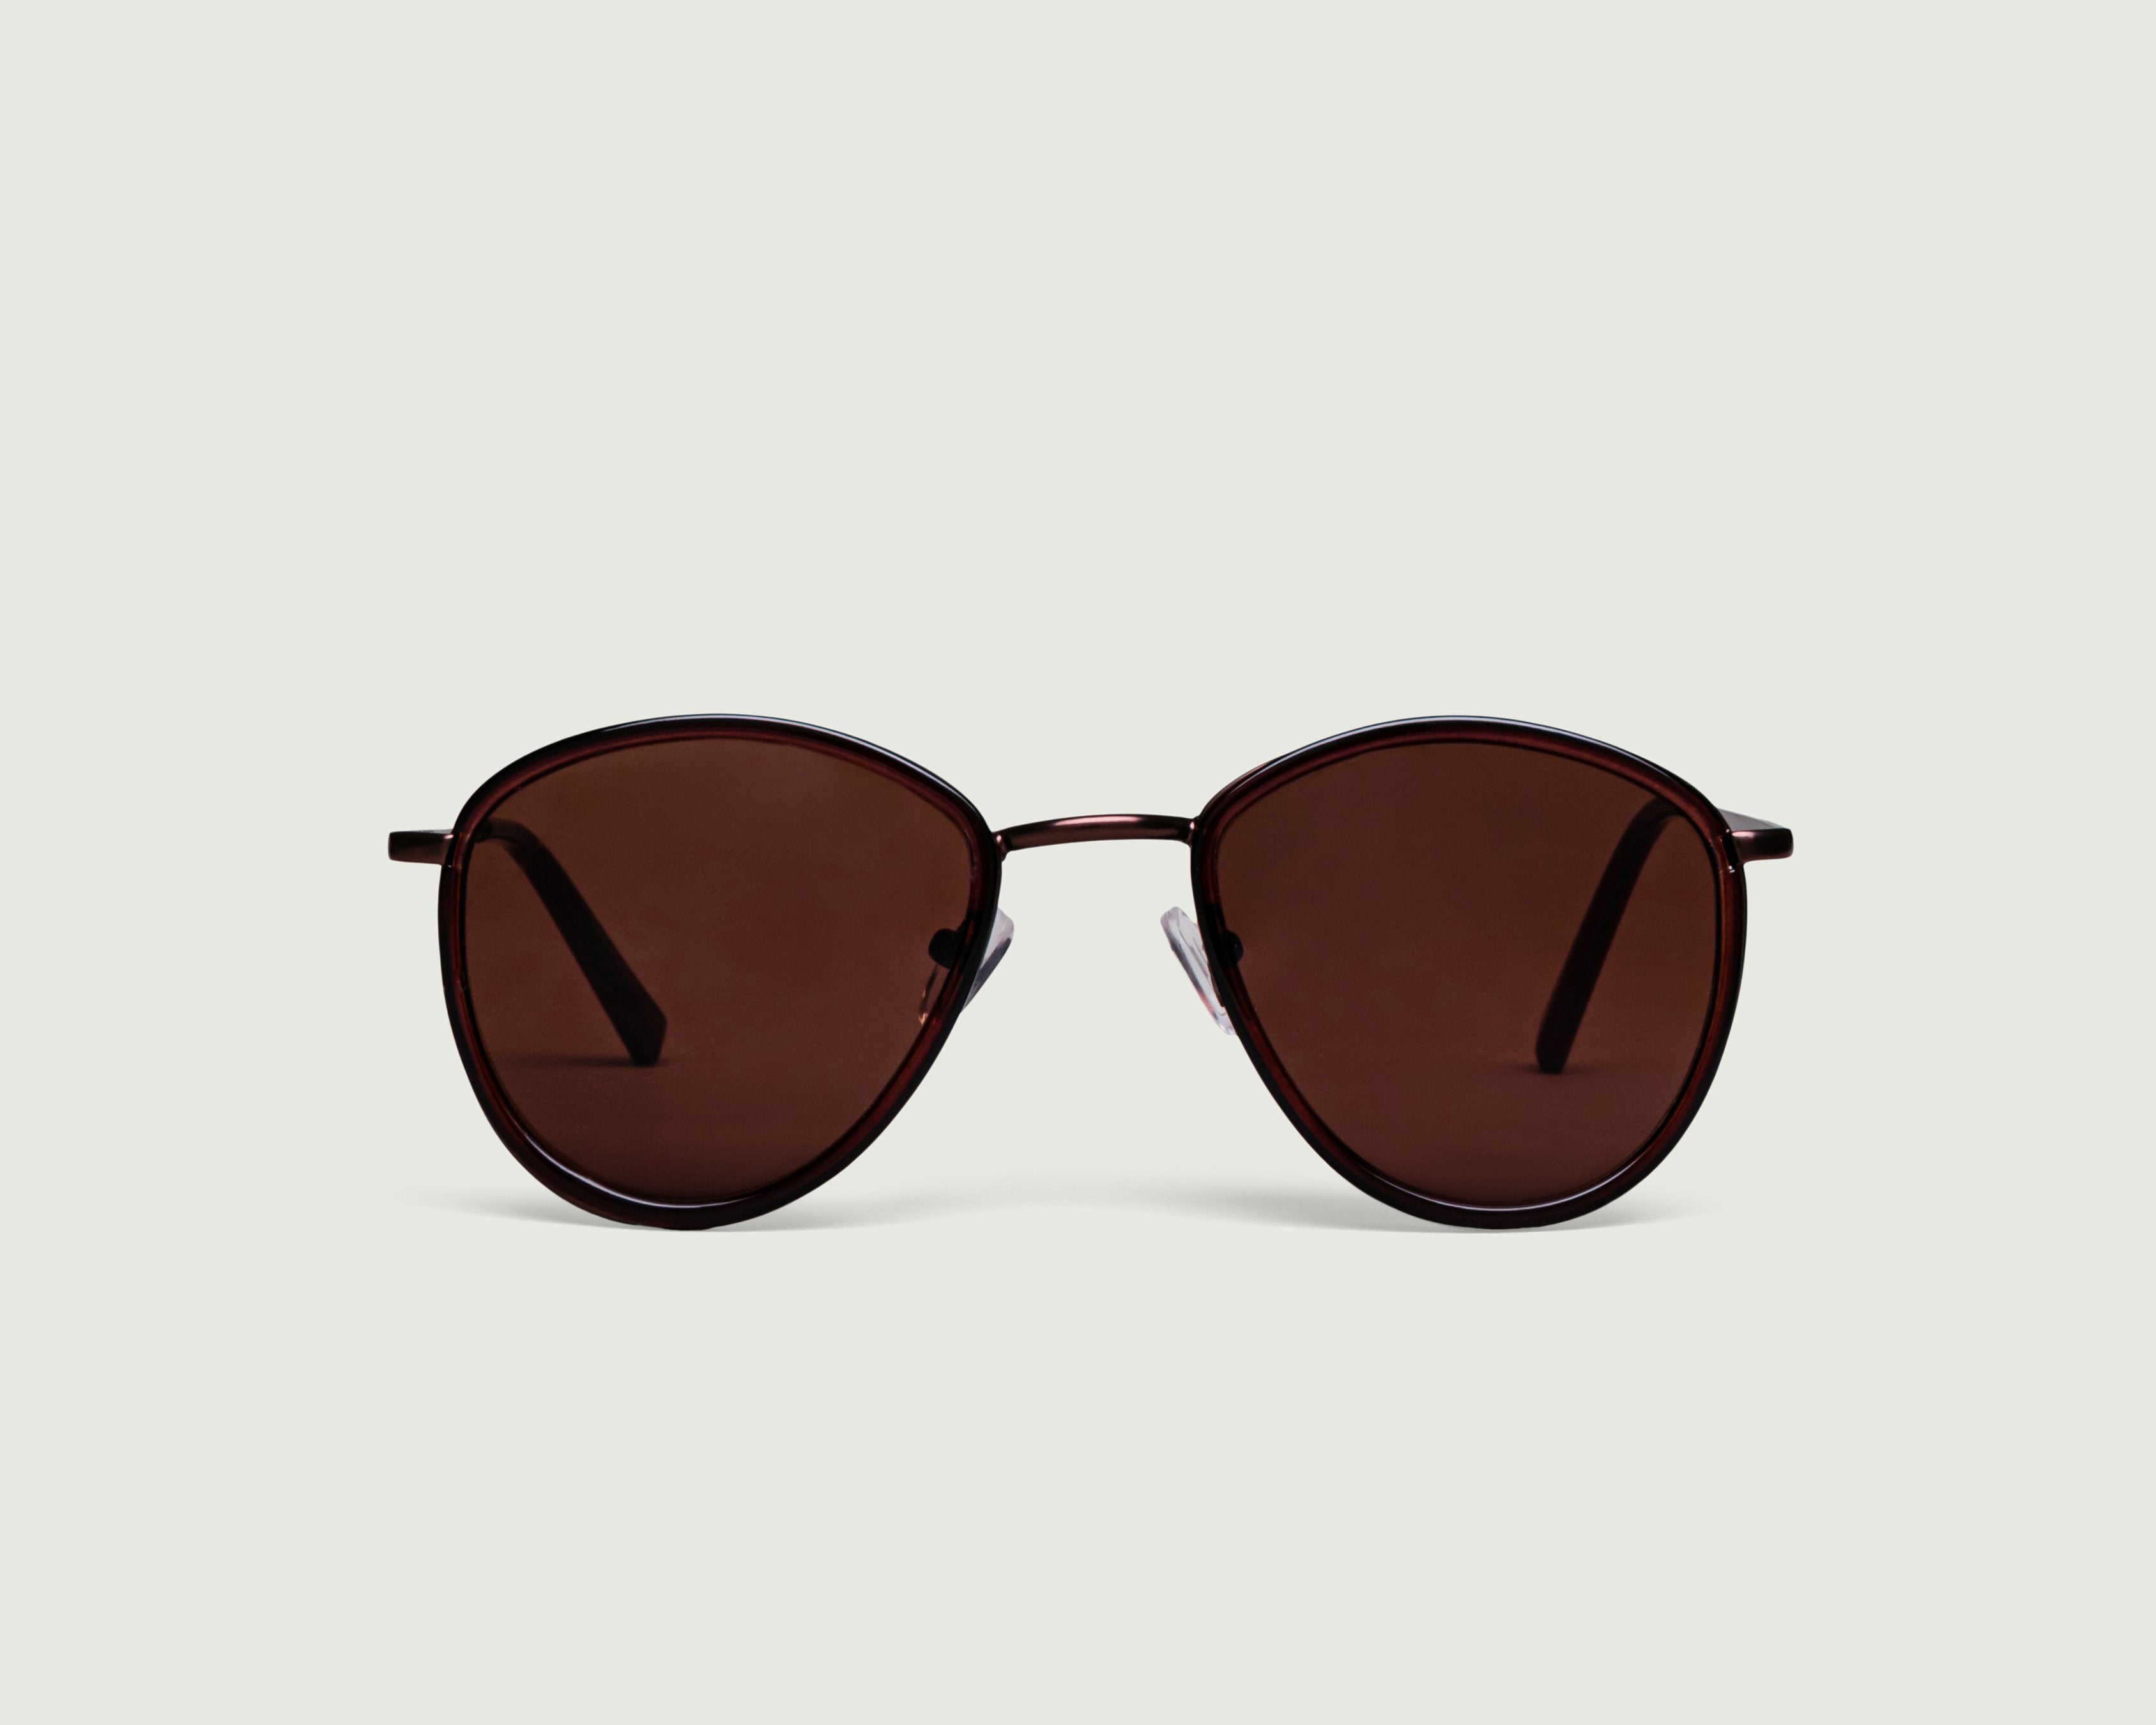 Barbecue::Dallas Sunglasses pilot brown plastic metal front